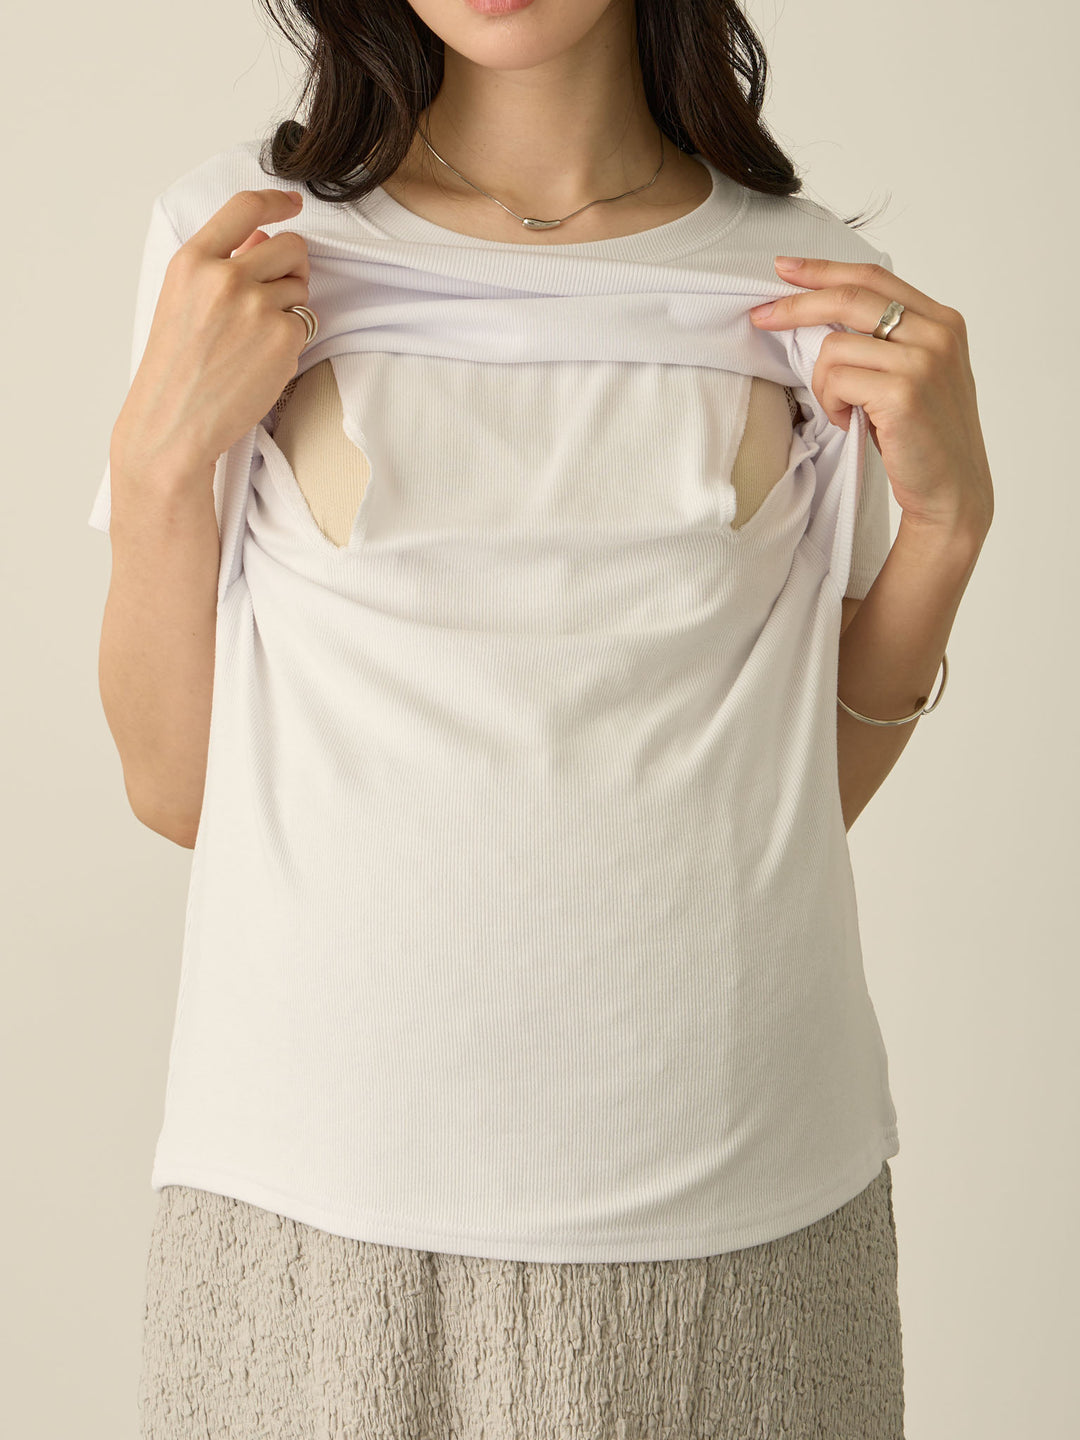 【マタニティ・授乳服】シンプル授乳Tシャツ